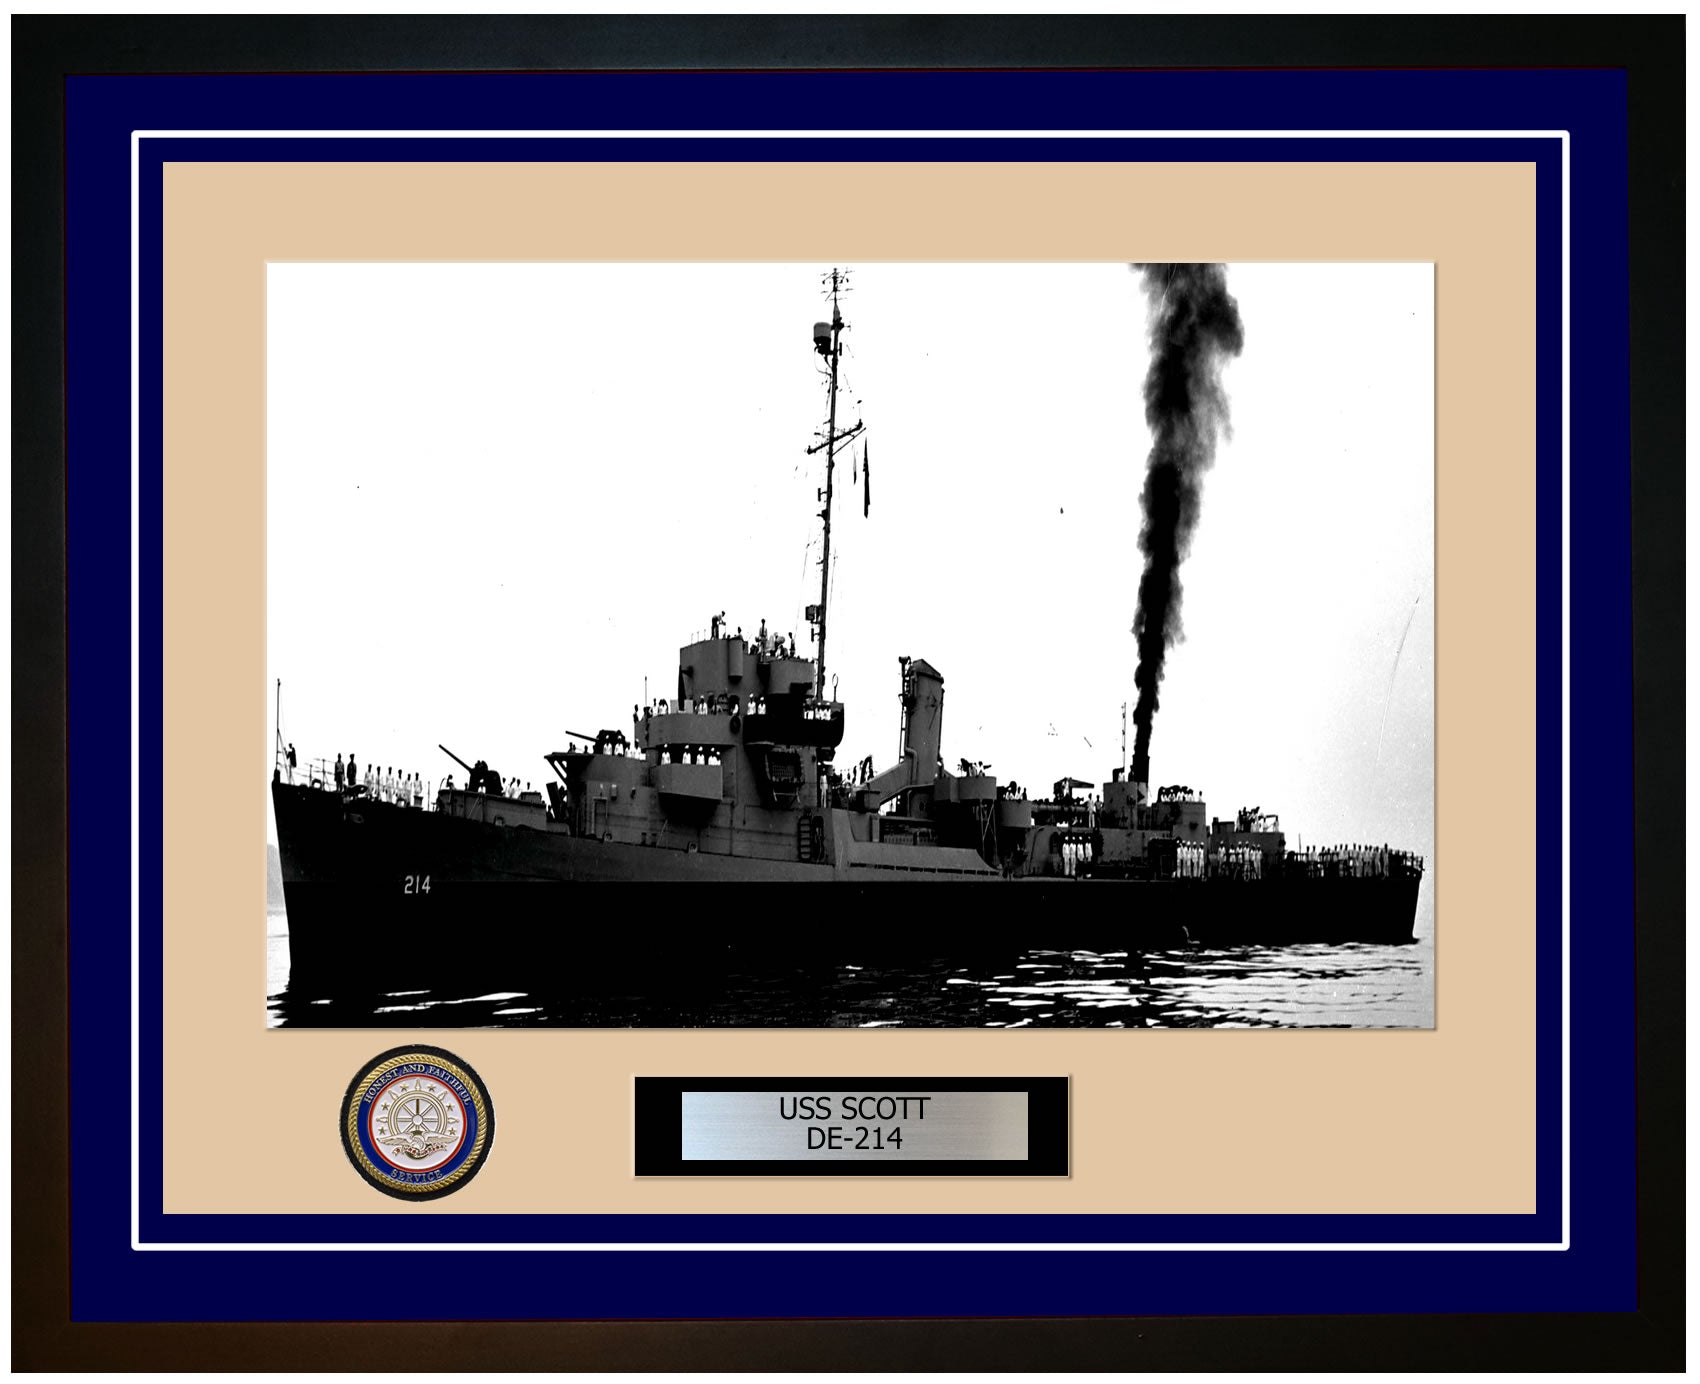 USS Scott DE-214 Framed Navy Ship Photo Blue